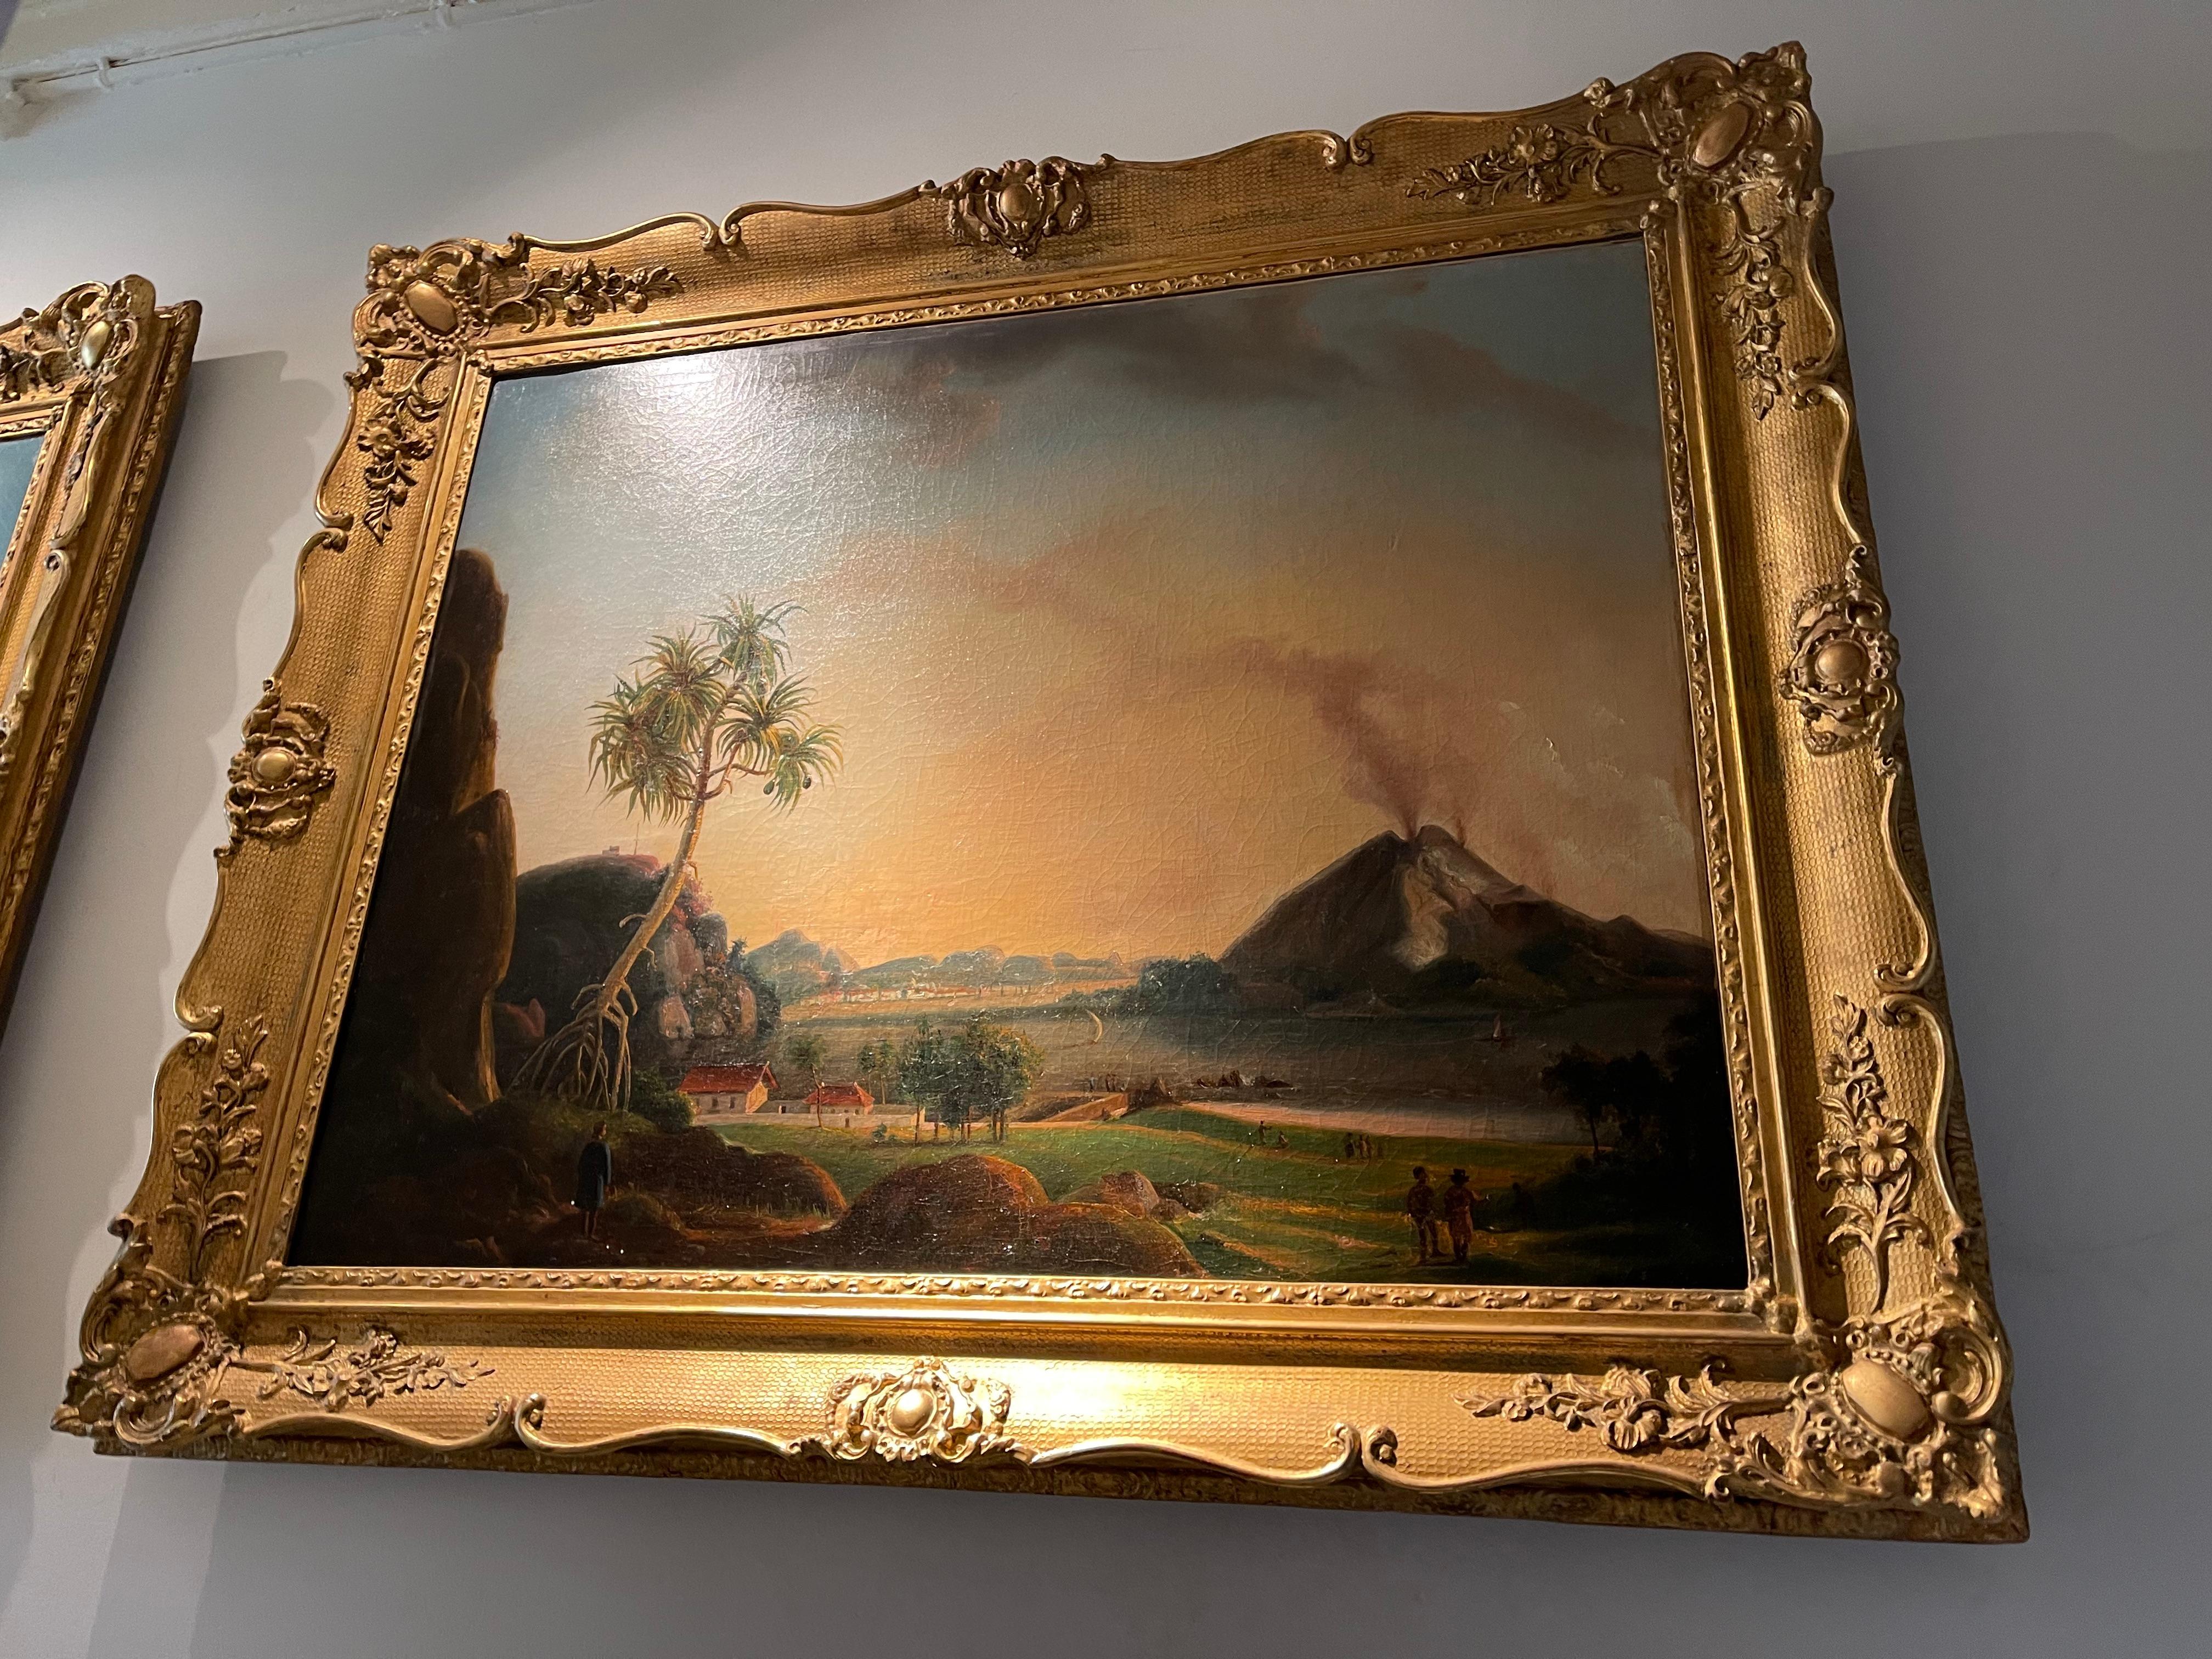 Charles Legrain, (19. Jahrhundert)

Zwei javanische Landschaften

Beide signiert Legrain Ch. und eines datiert 1857

Beide Öl auf Leinwand, Größe: 95 x 114 cm
In reichem vergoldetem Gesso-Rahmen.

(2x).